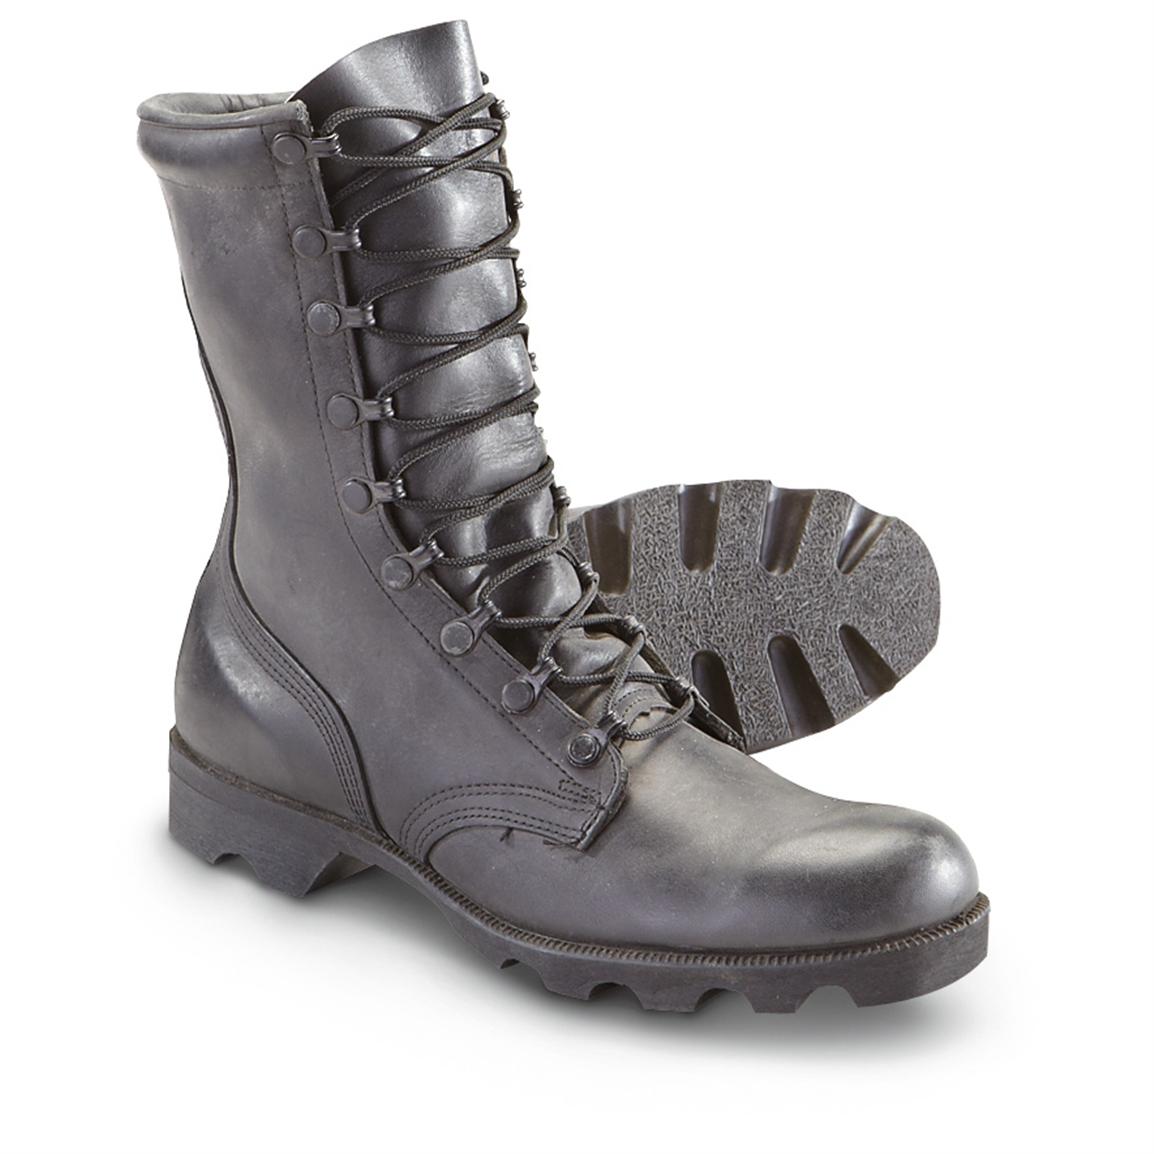 Men's Used U.S. Military Surplus Boots, Black - 578768, Combat ...